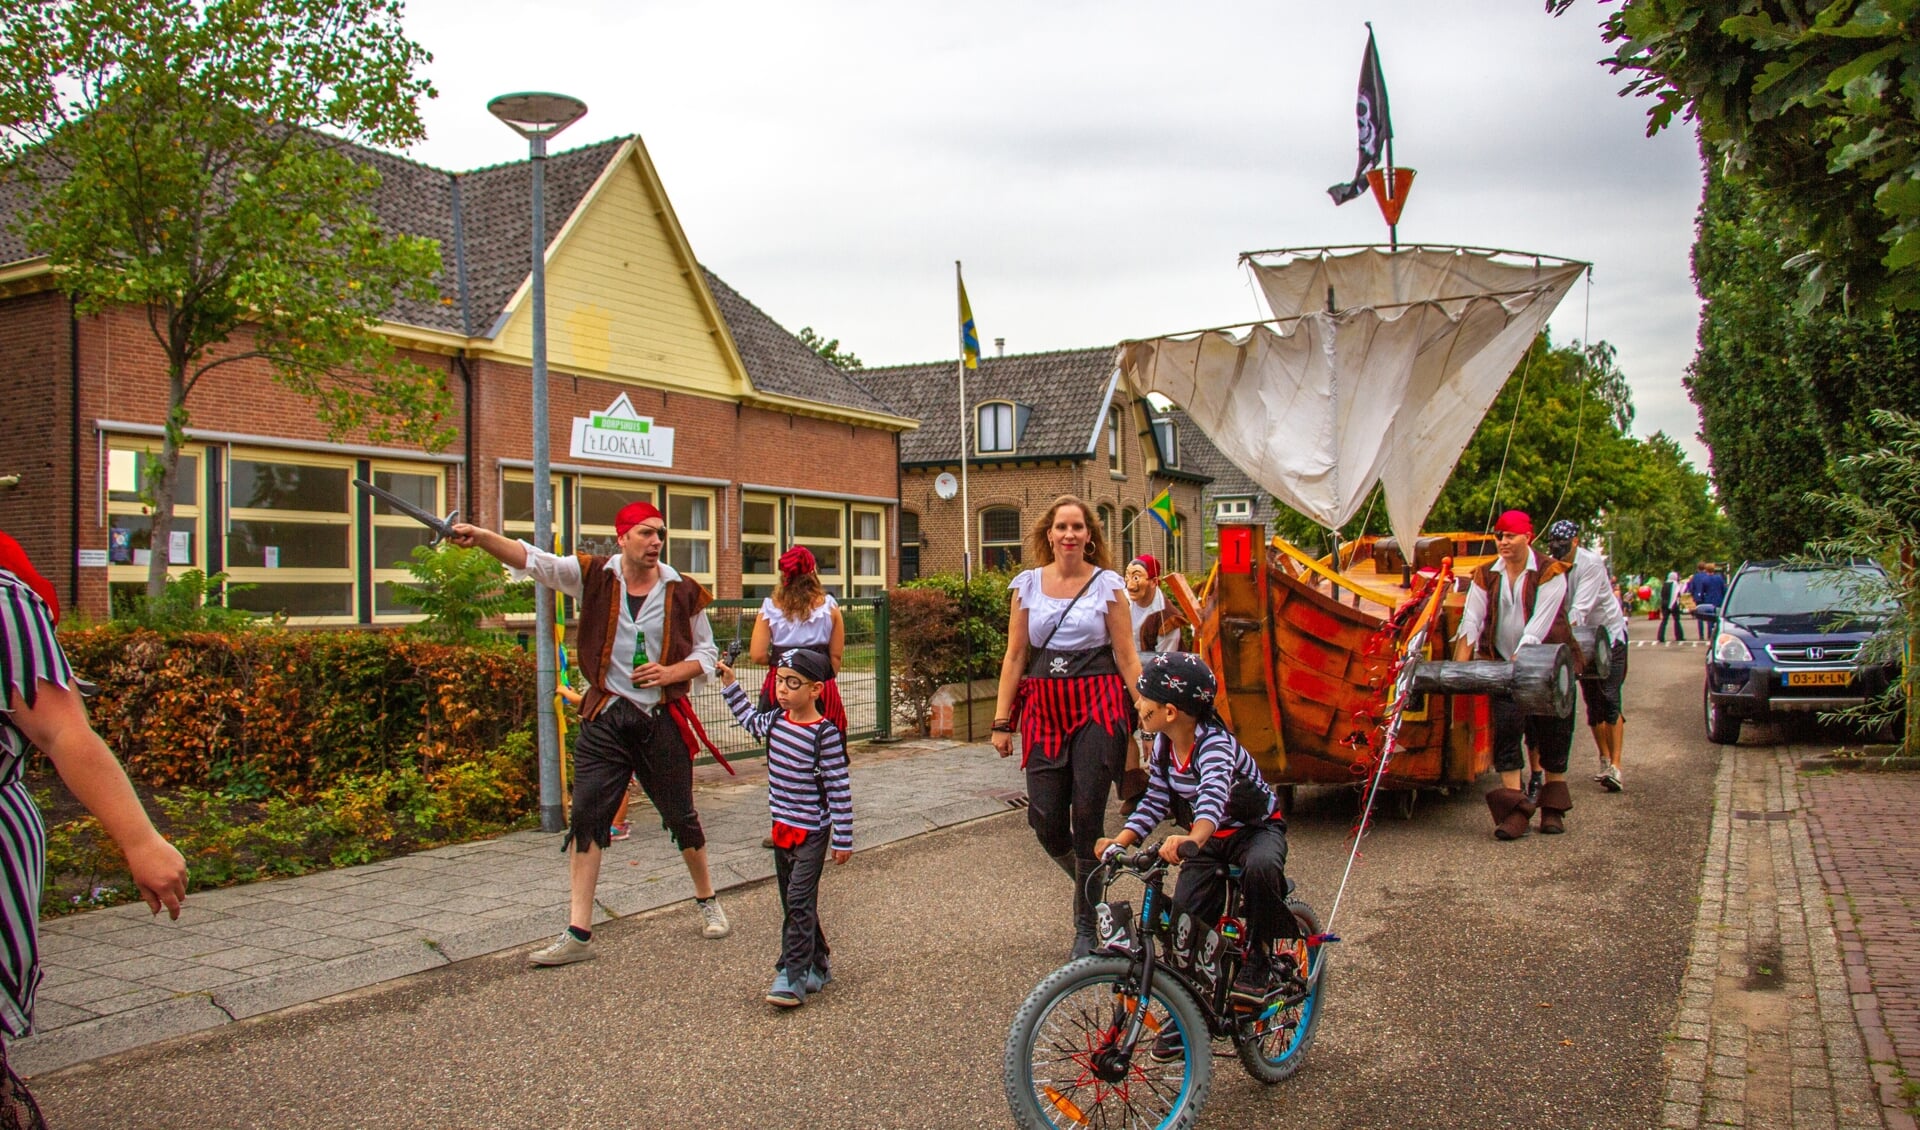 De Piraten behaalde de winst in de kermisoptocht van Olburgen-Rha. Foto: Achterhoekfoto.nl/Liesbeth Spaansen